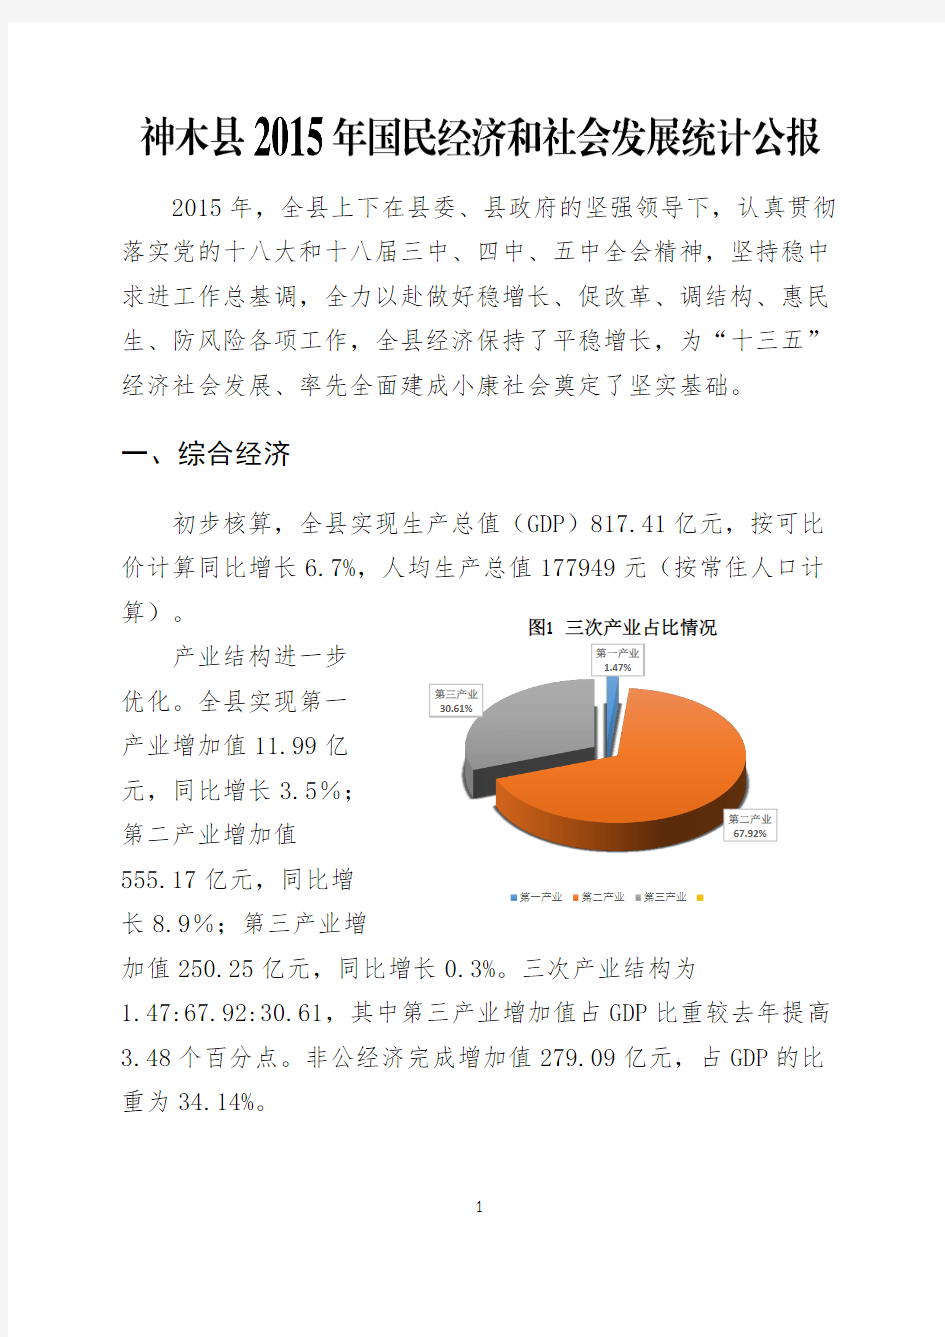 神木县2015年国民经济和社会发展公报